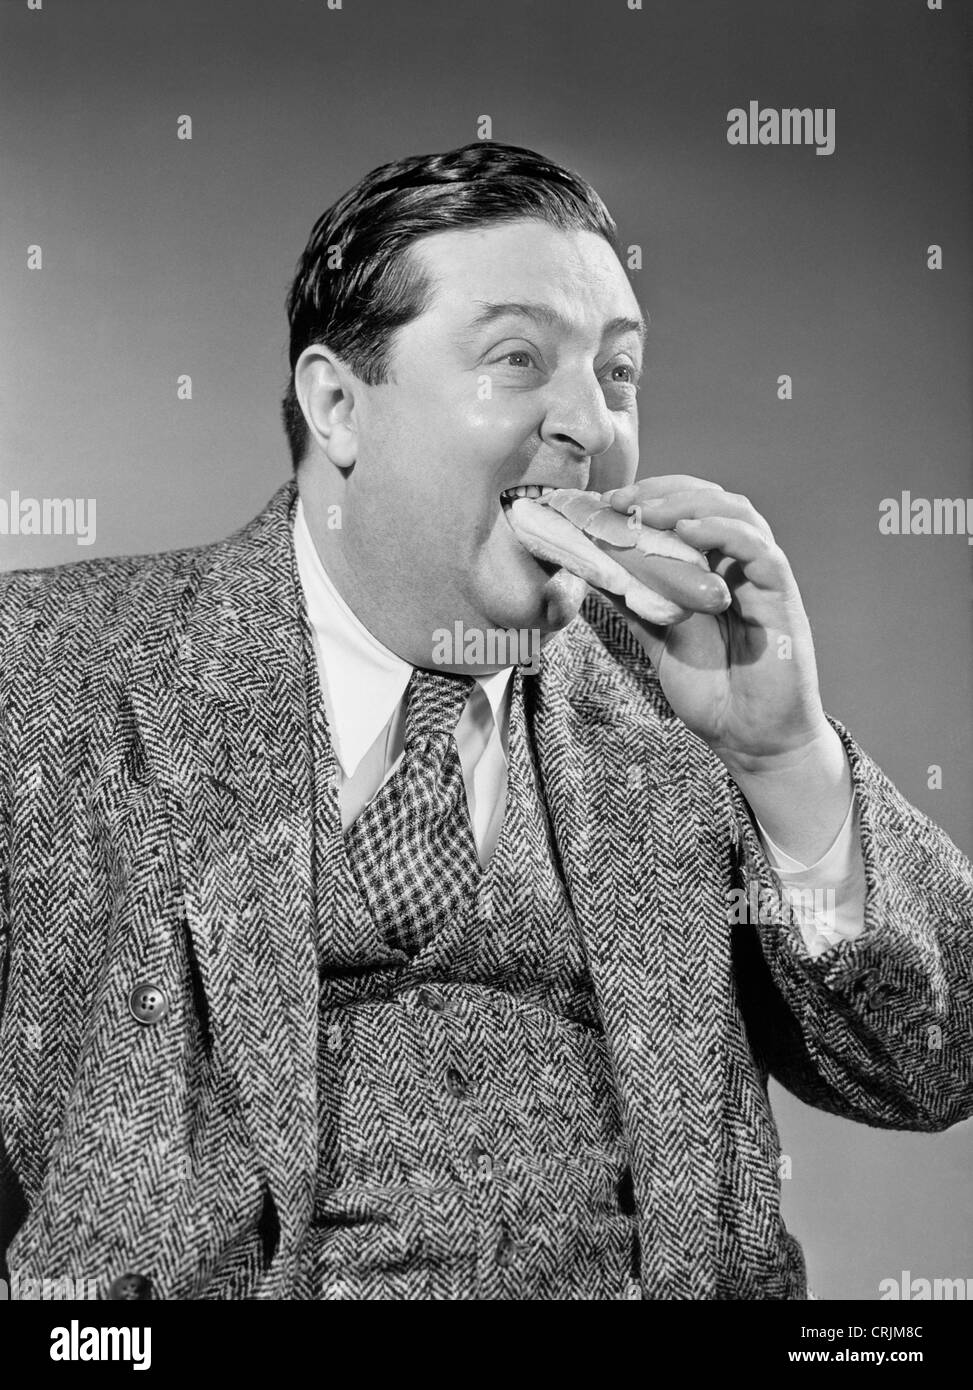 Man eating hotdog Banque D'Images